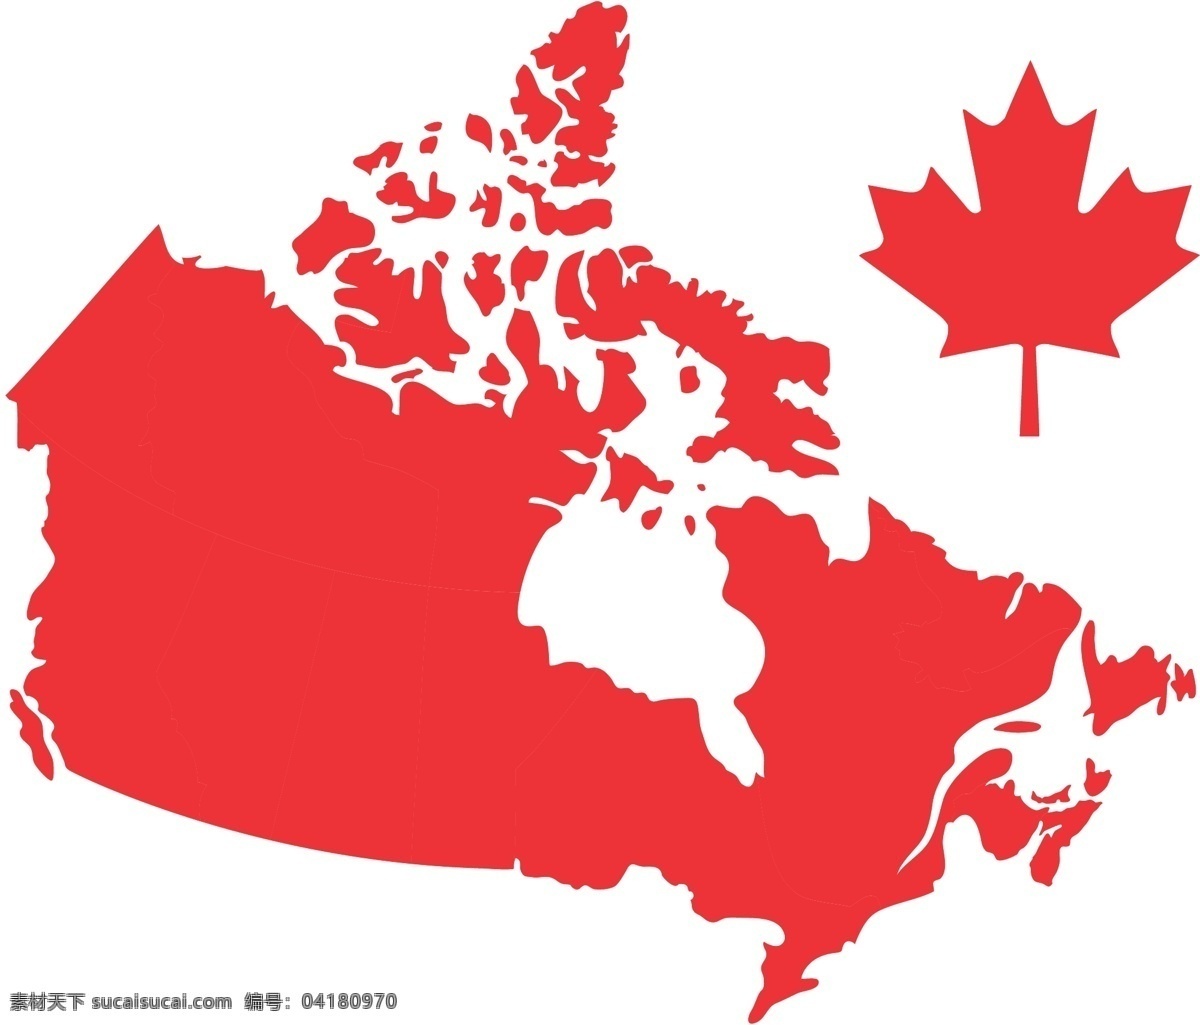 加拿大 矢量图 天 加拿大天 无 载体 日 国庆日 快乐 矢量 加拿大天矢量 加拿大天地图 矢量天加拿大 天加拿大 在天